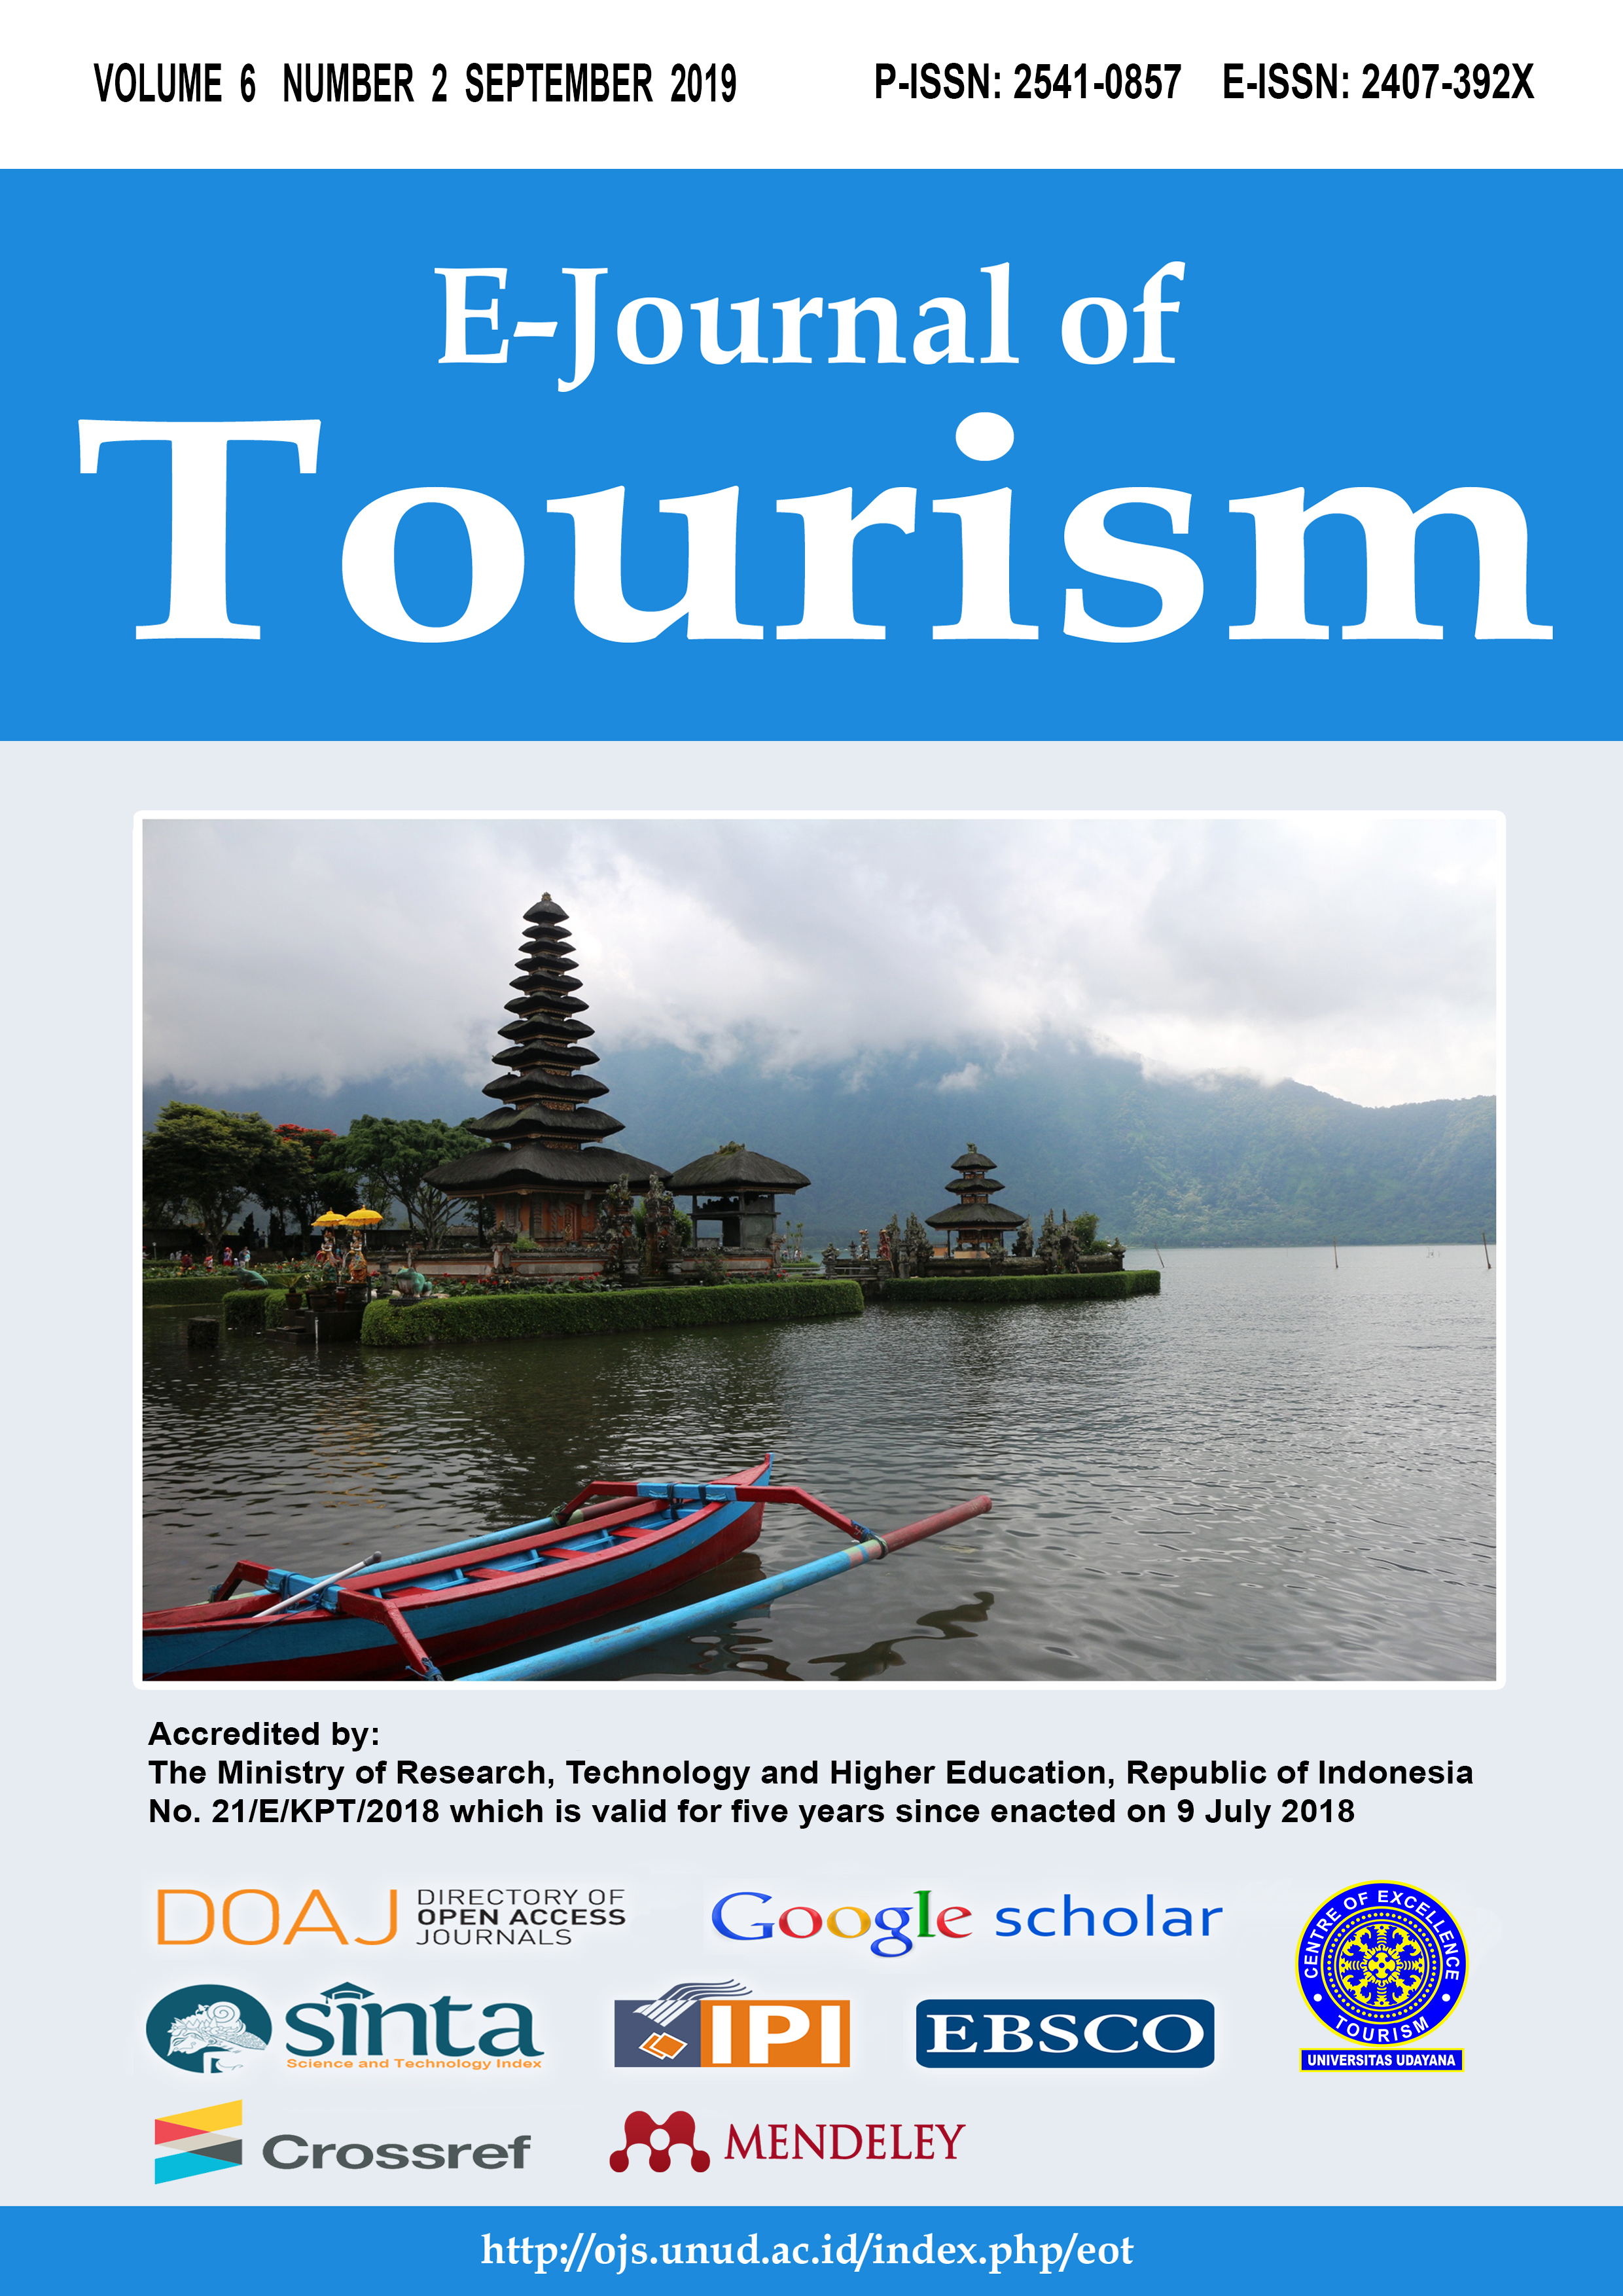 inbound tourism journal article